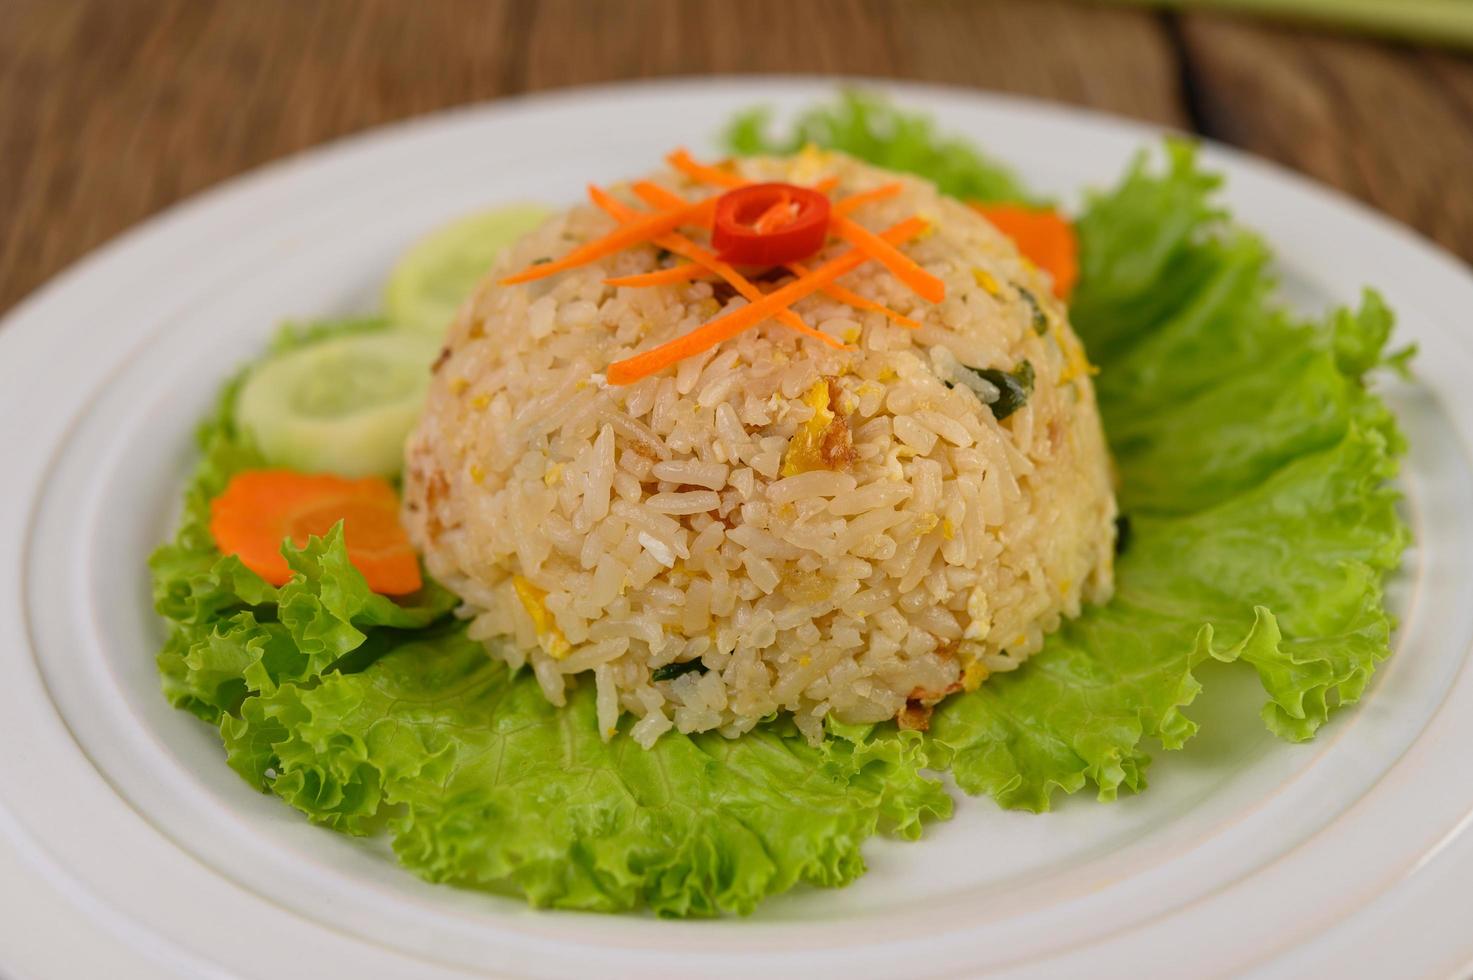 arroz frito em um prato branco com alface e enfeite foto